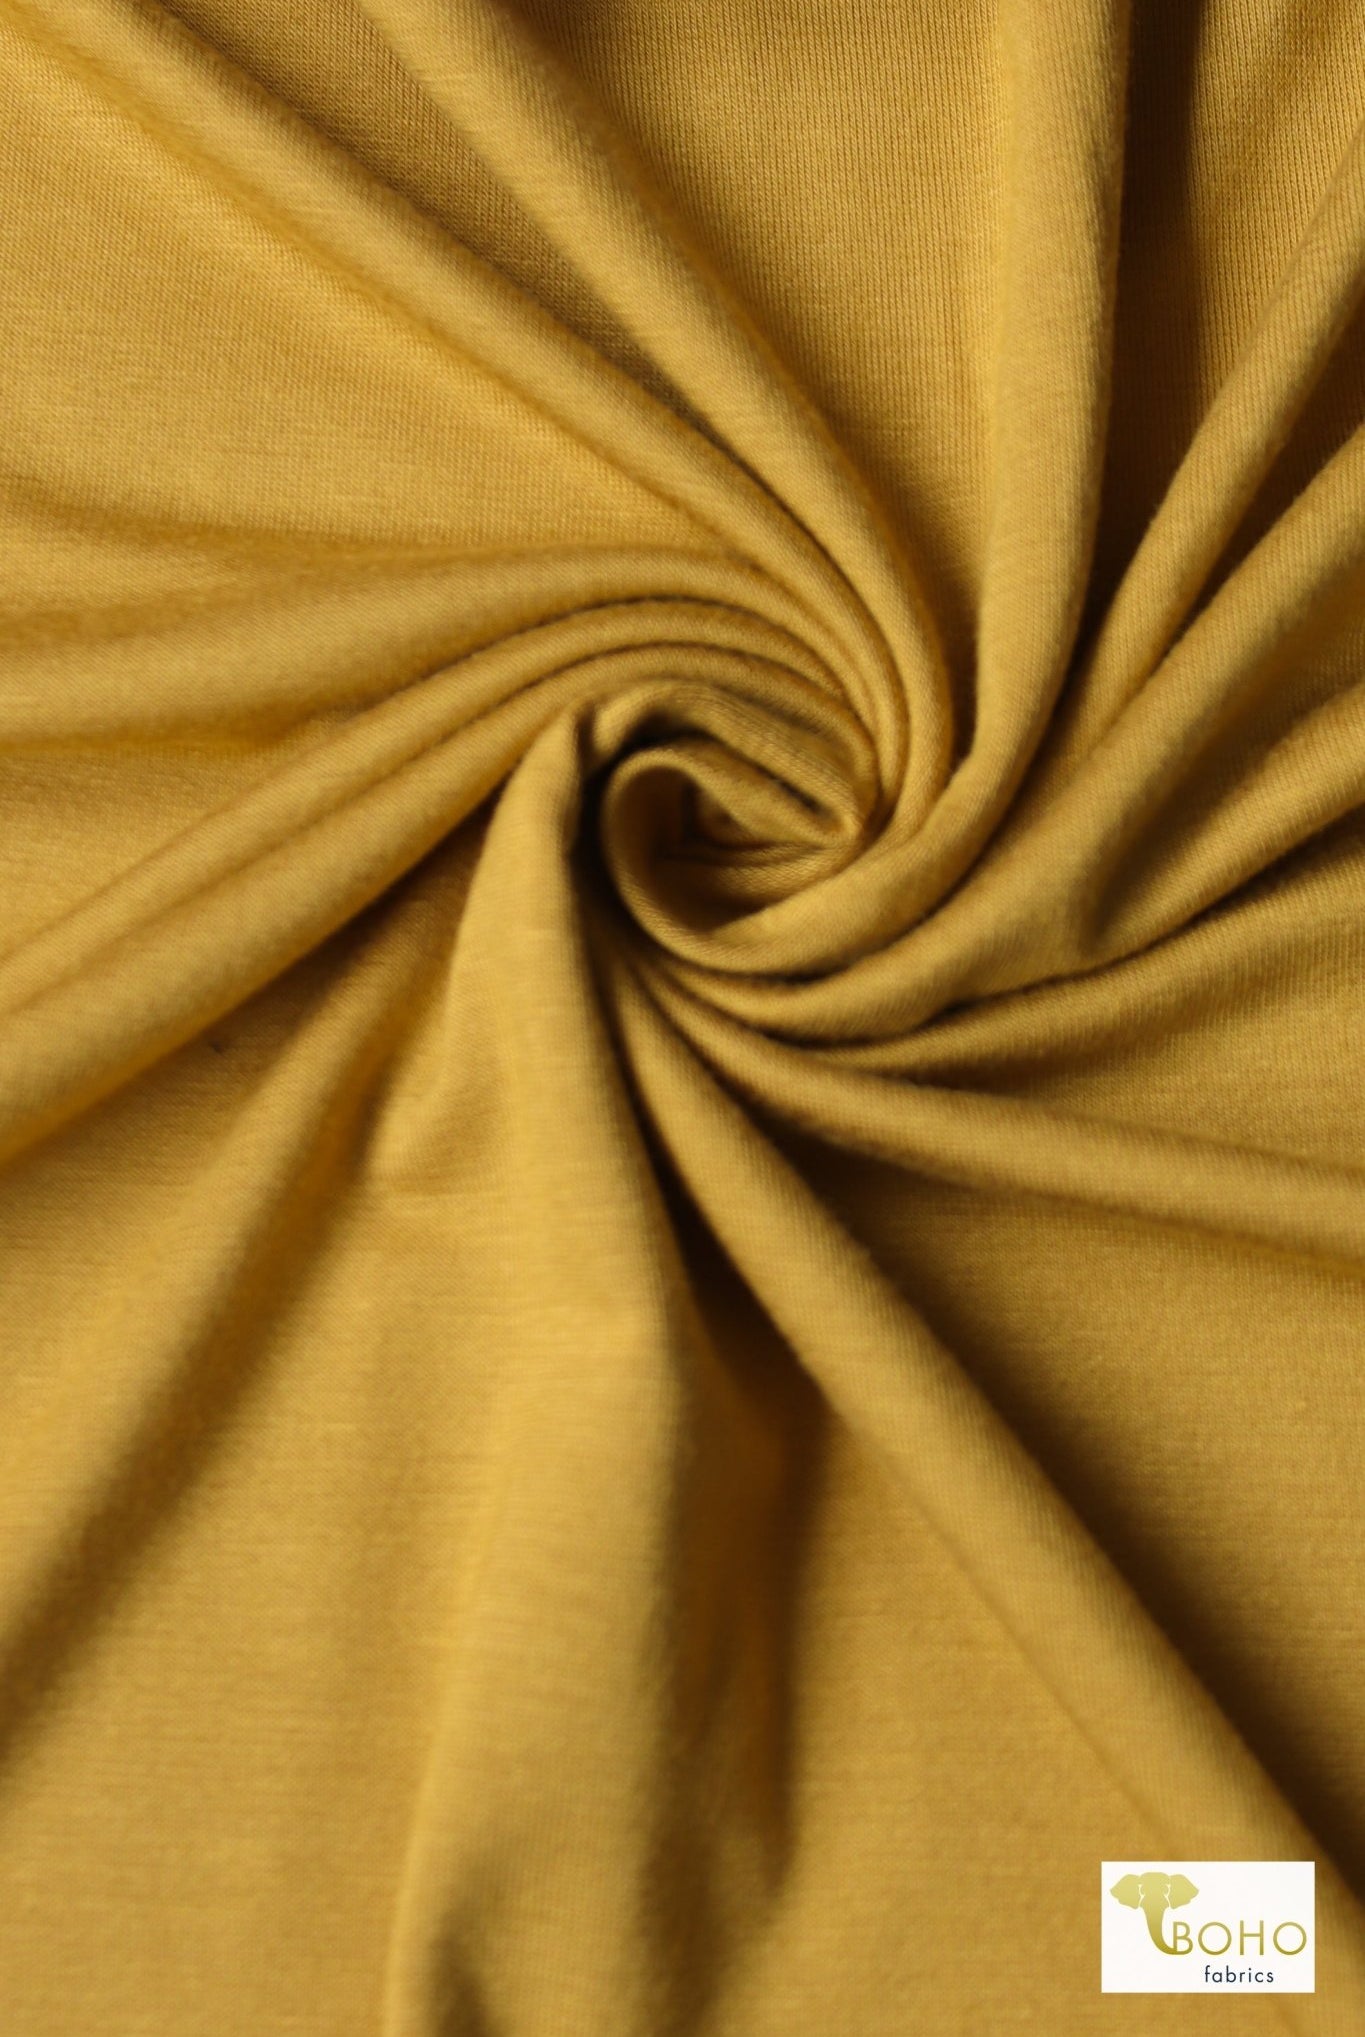 Golden Glow, Yellow. Rayon Spandex Knit - Boho Fabrics